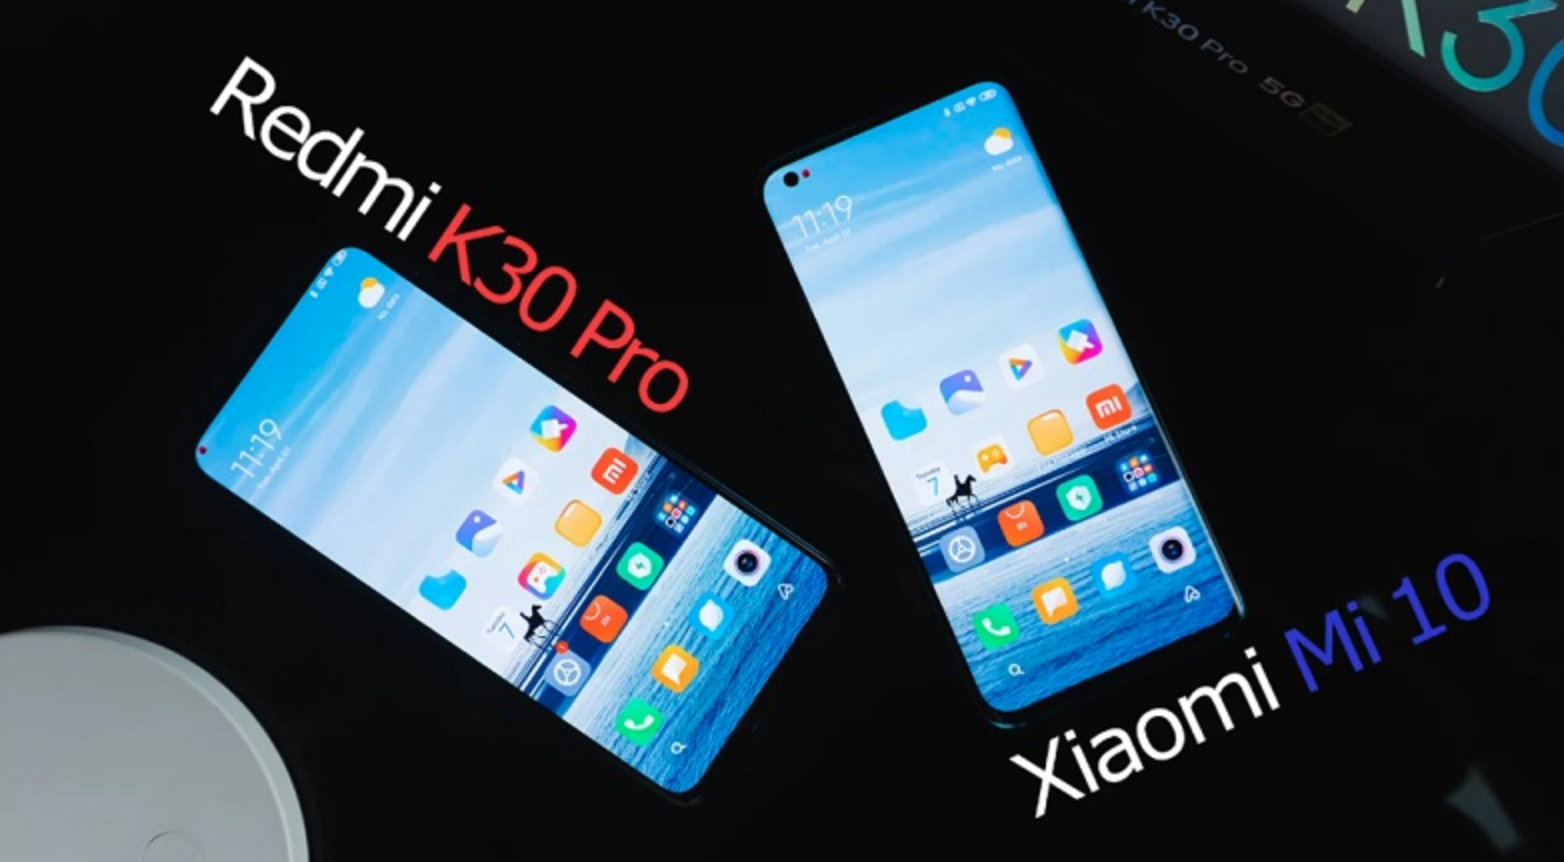 Vì sao Xiaomi lại ra mắt quá nhiều flagship như vậy? Trong khi các hãng chỉ có 1 đến 2 chiếc trong một năm